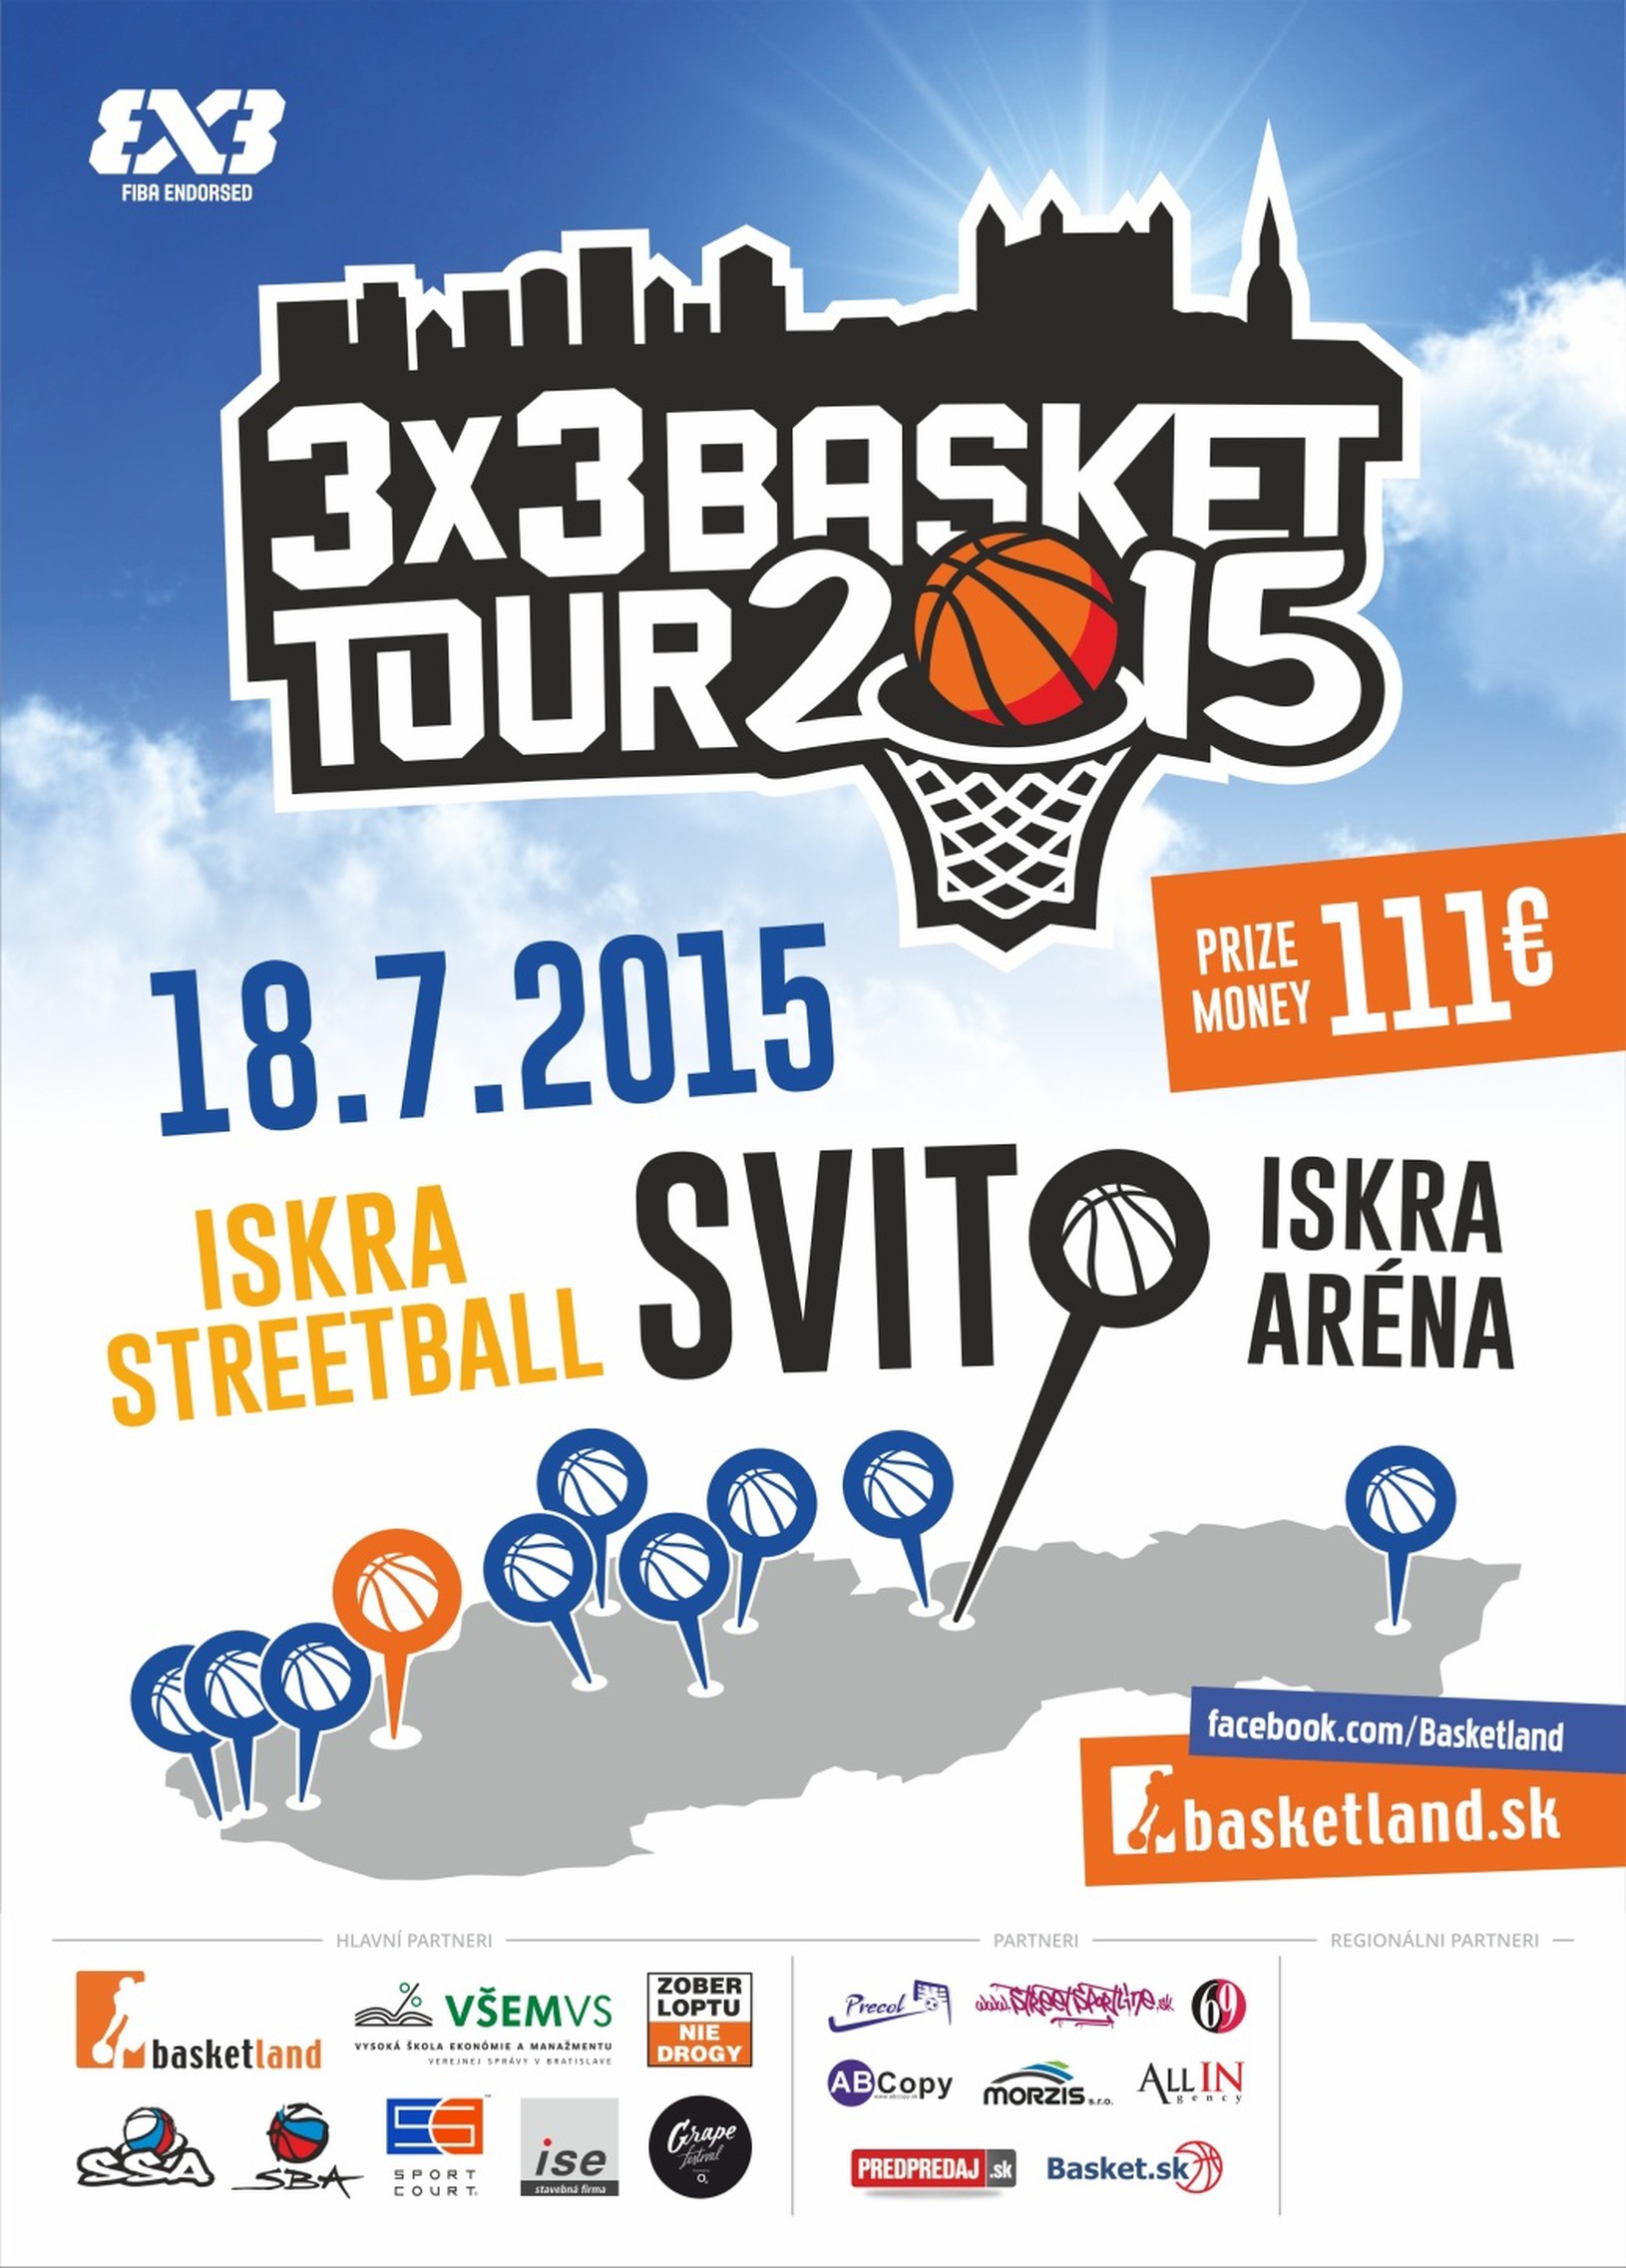 3x3 Basket Tour 2015